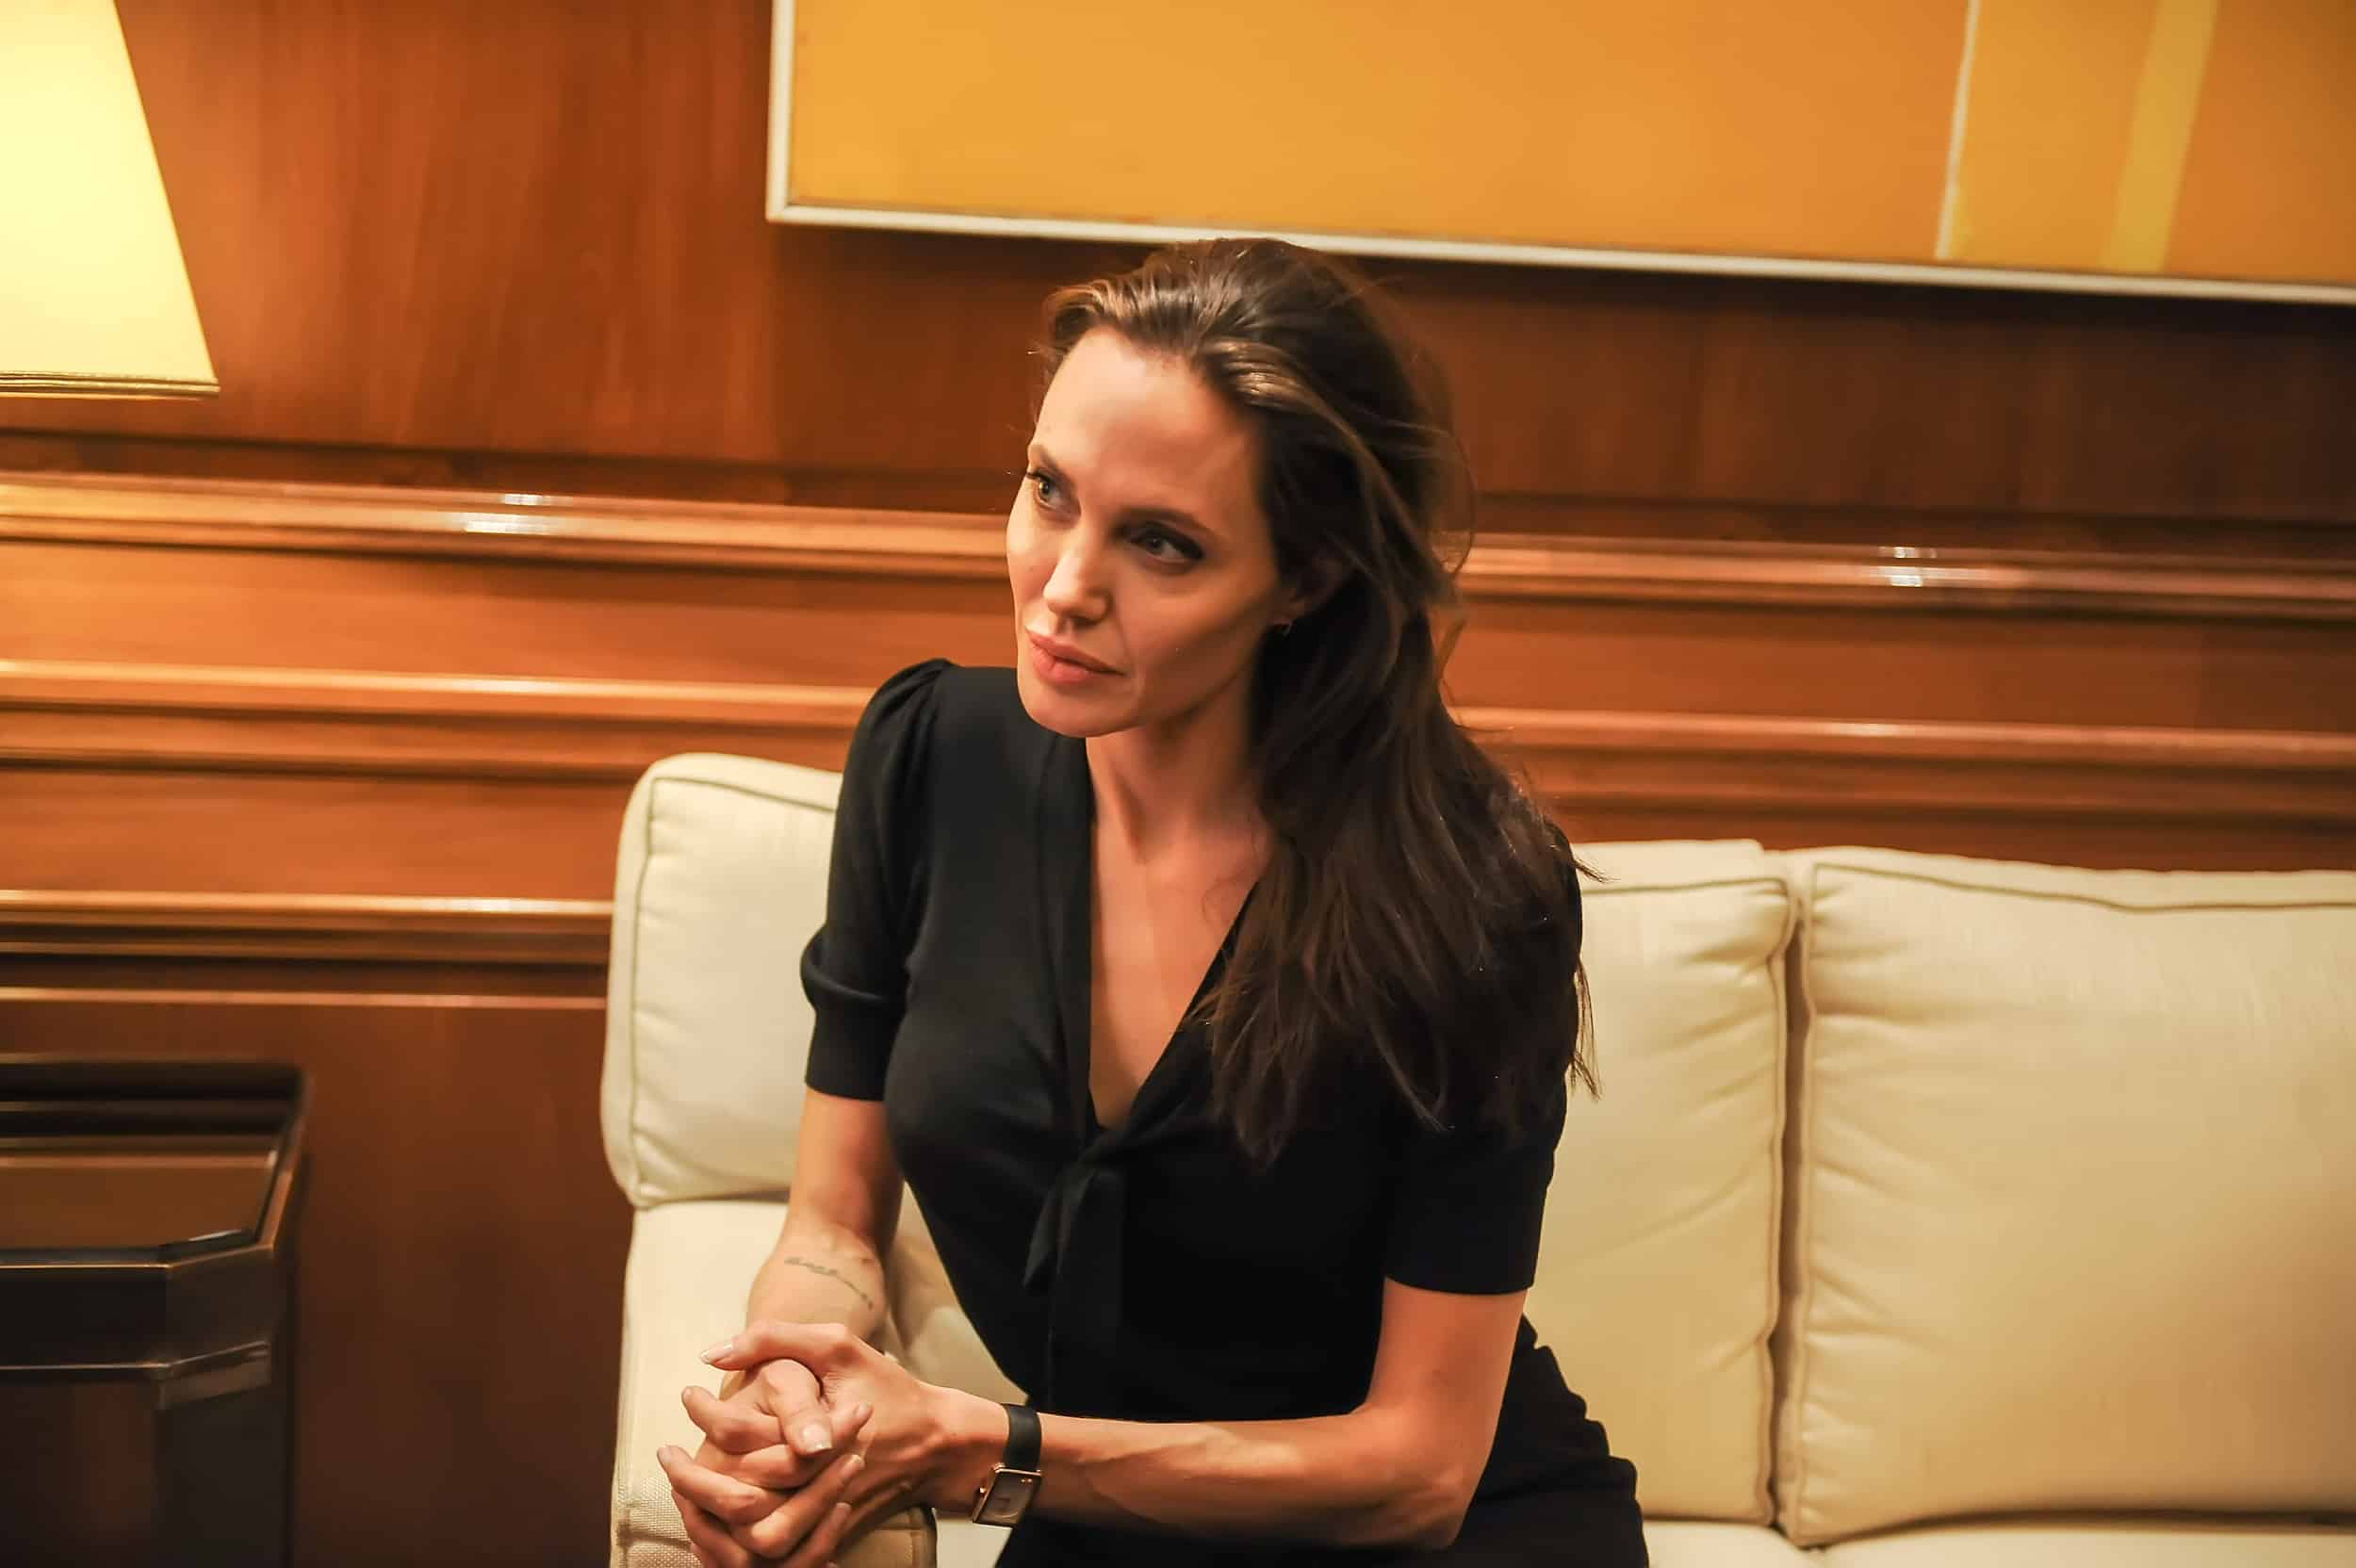 Celebrity Corner: Angelina Jolie wearing a Cartier Tank - Luxury